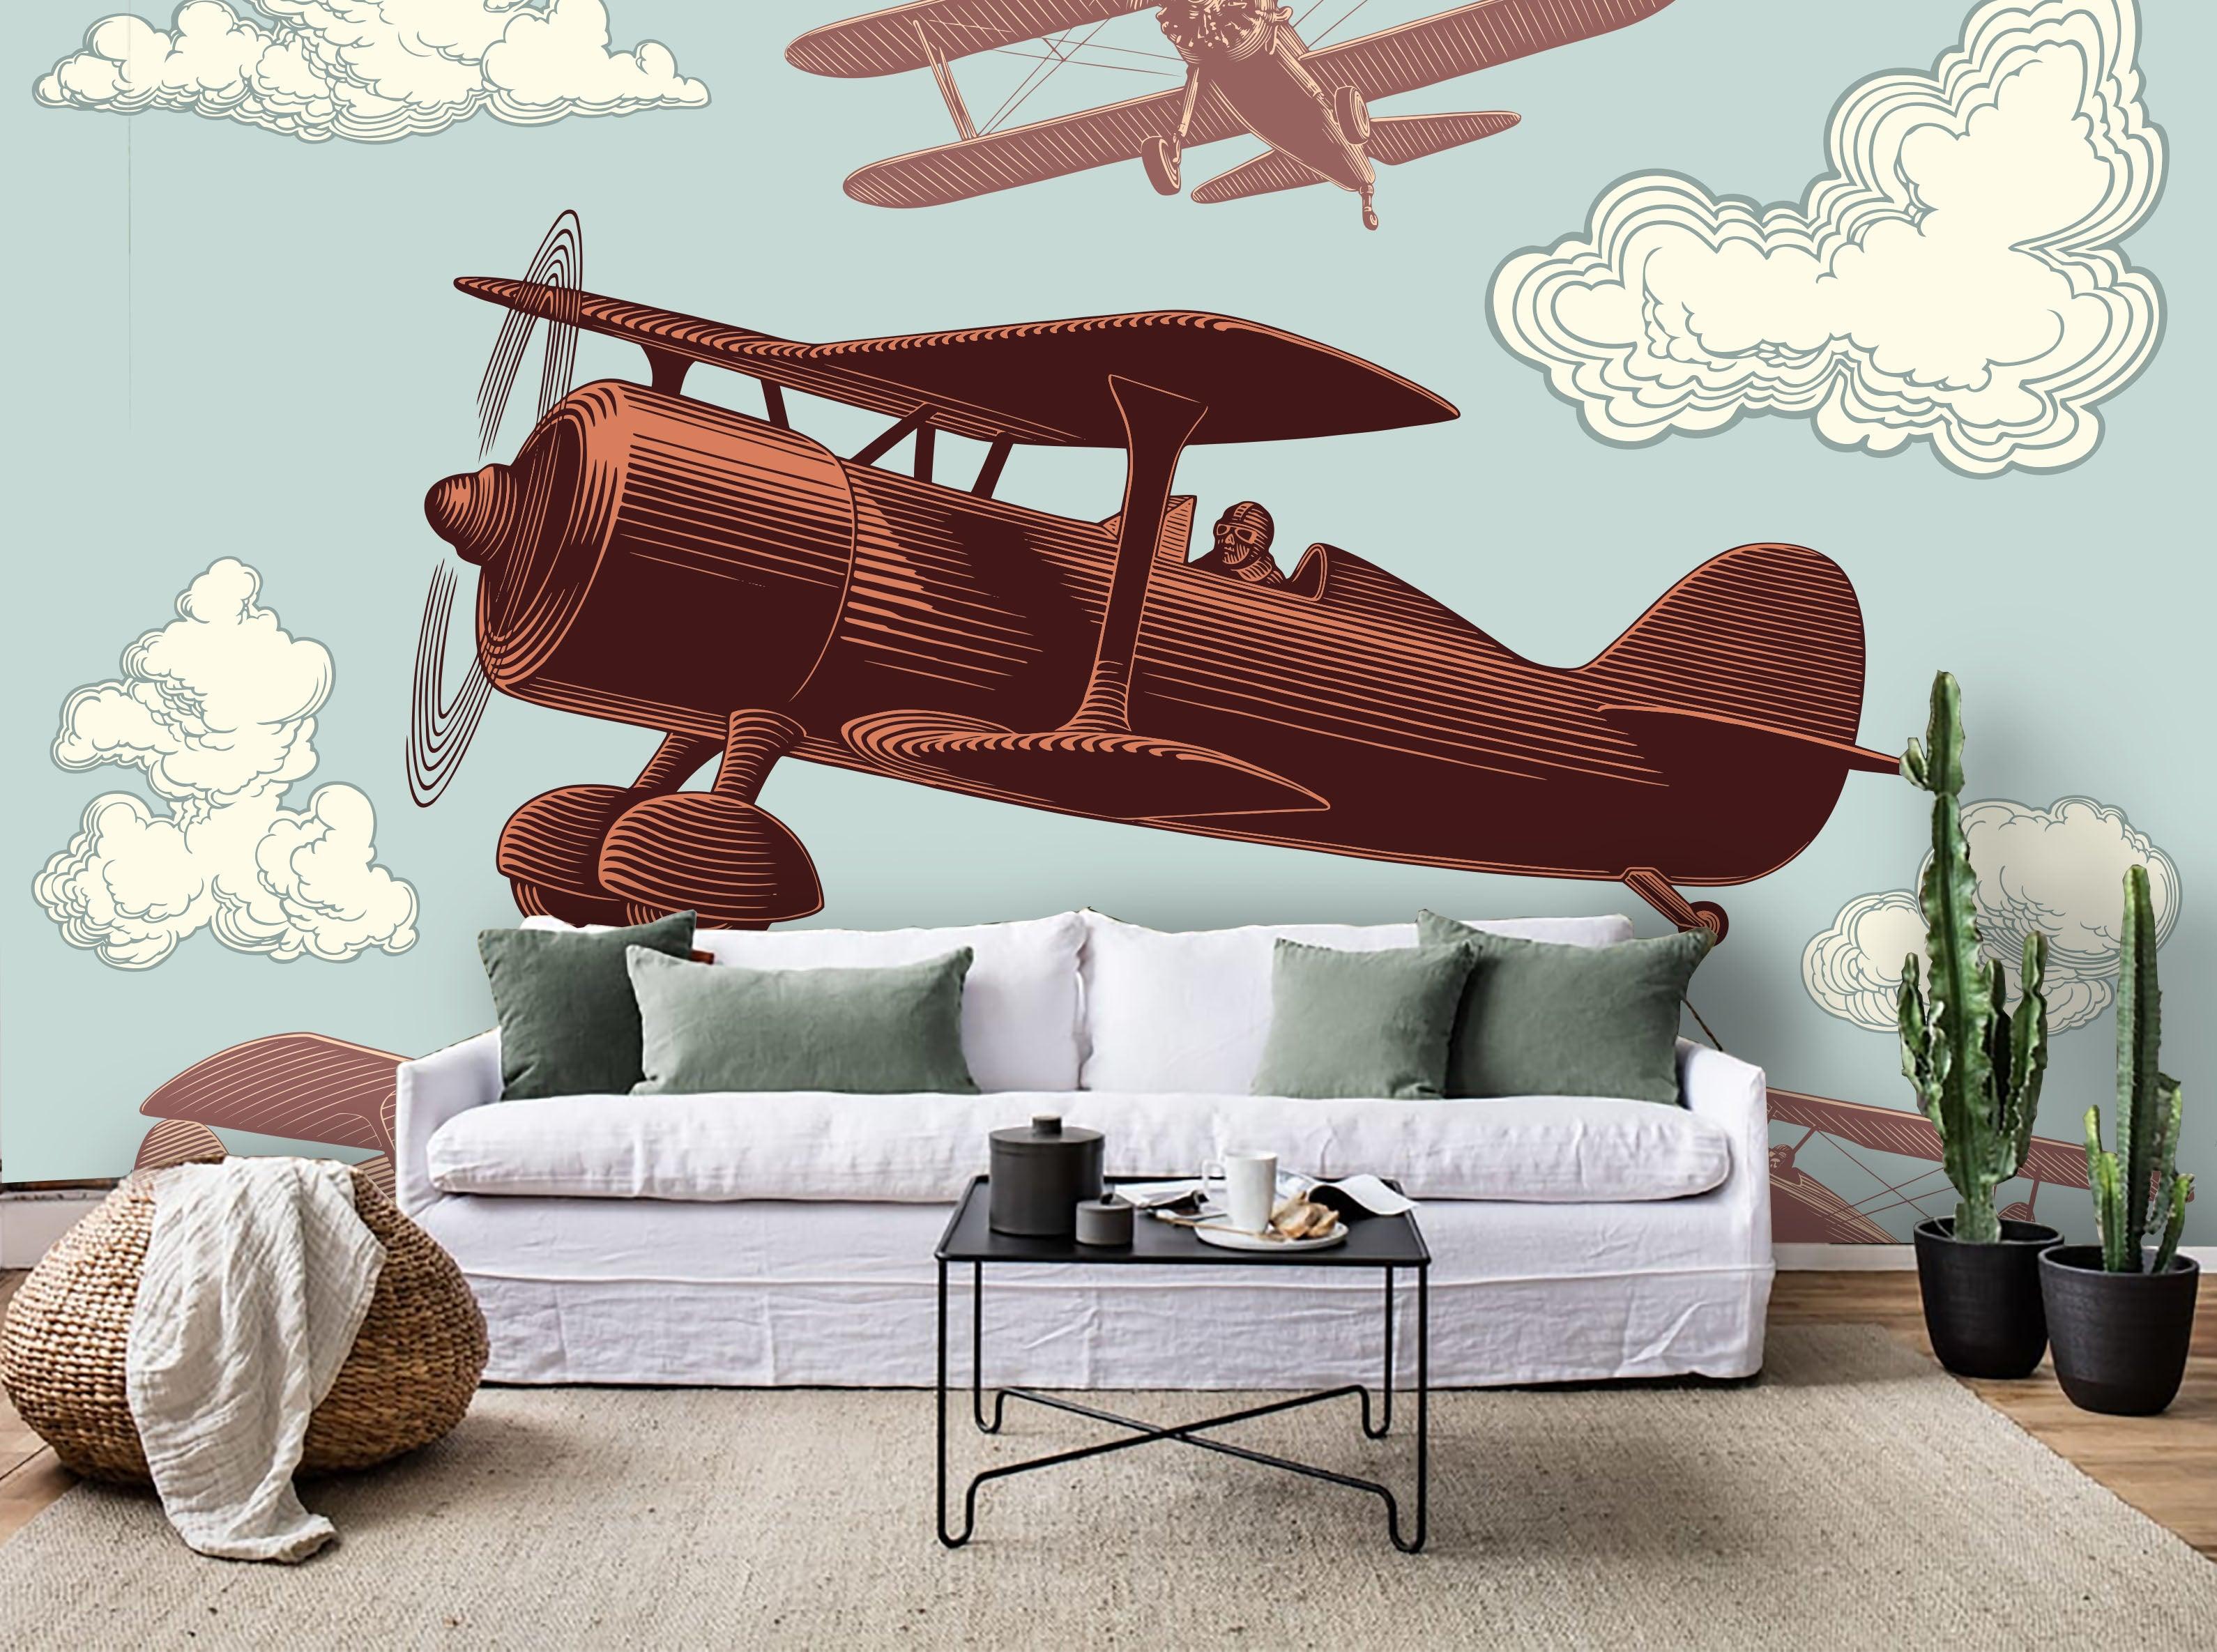 3D Cartoon Aircraft  Wall Mural Wallpaper 63- Jess Art Decoration